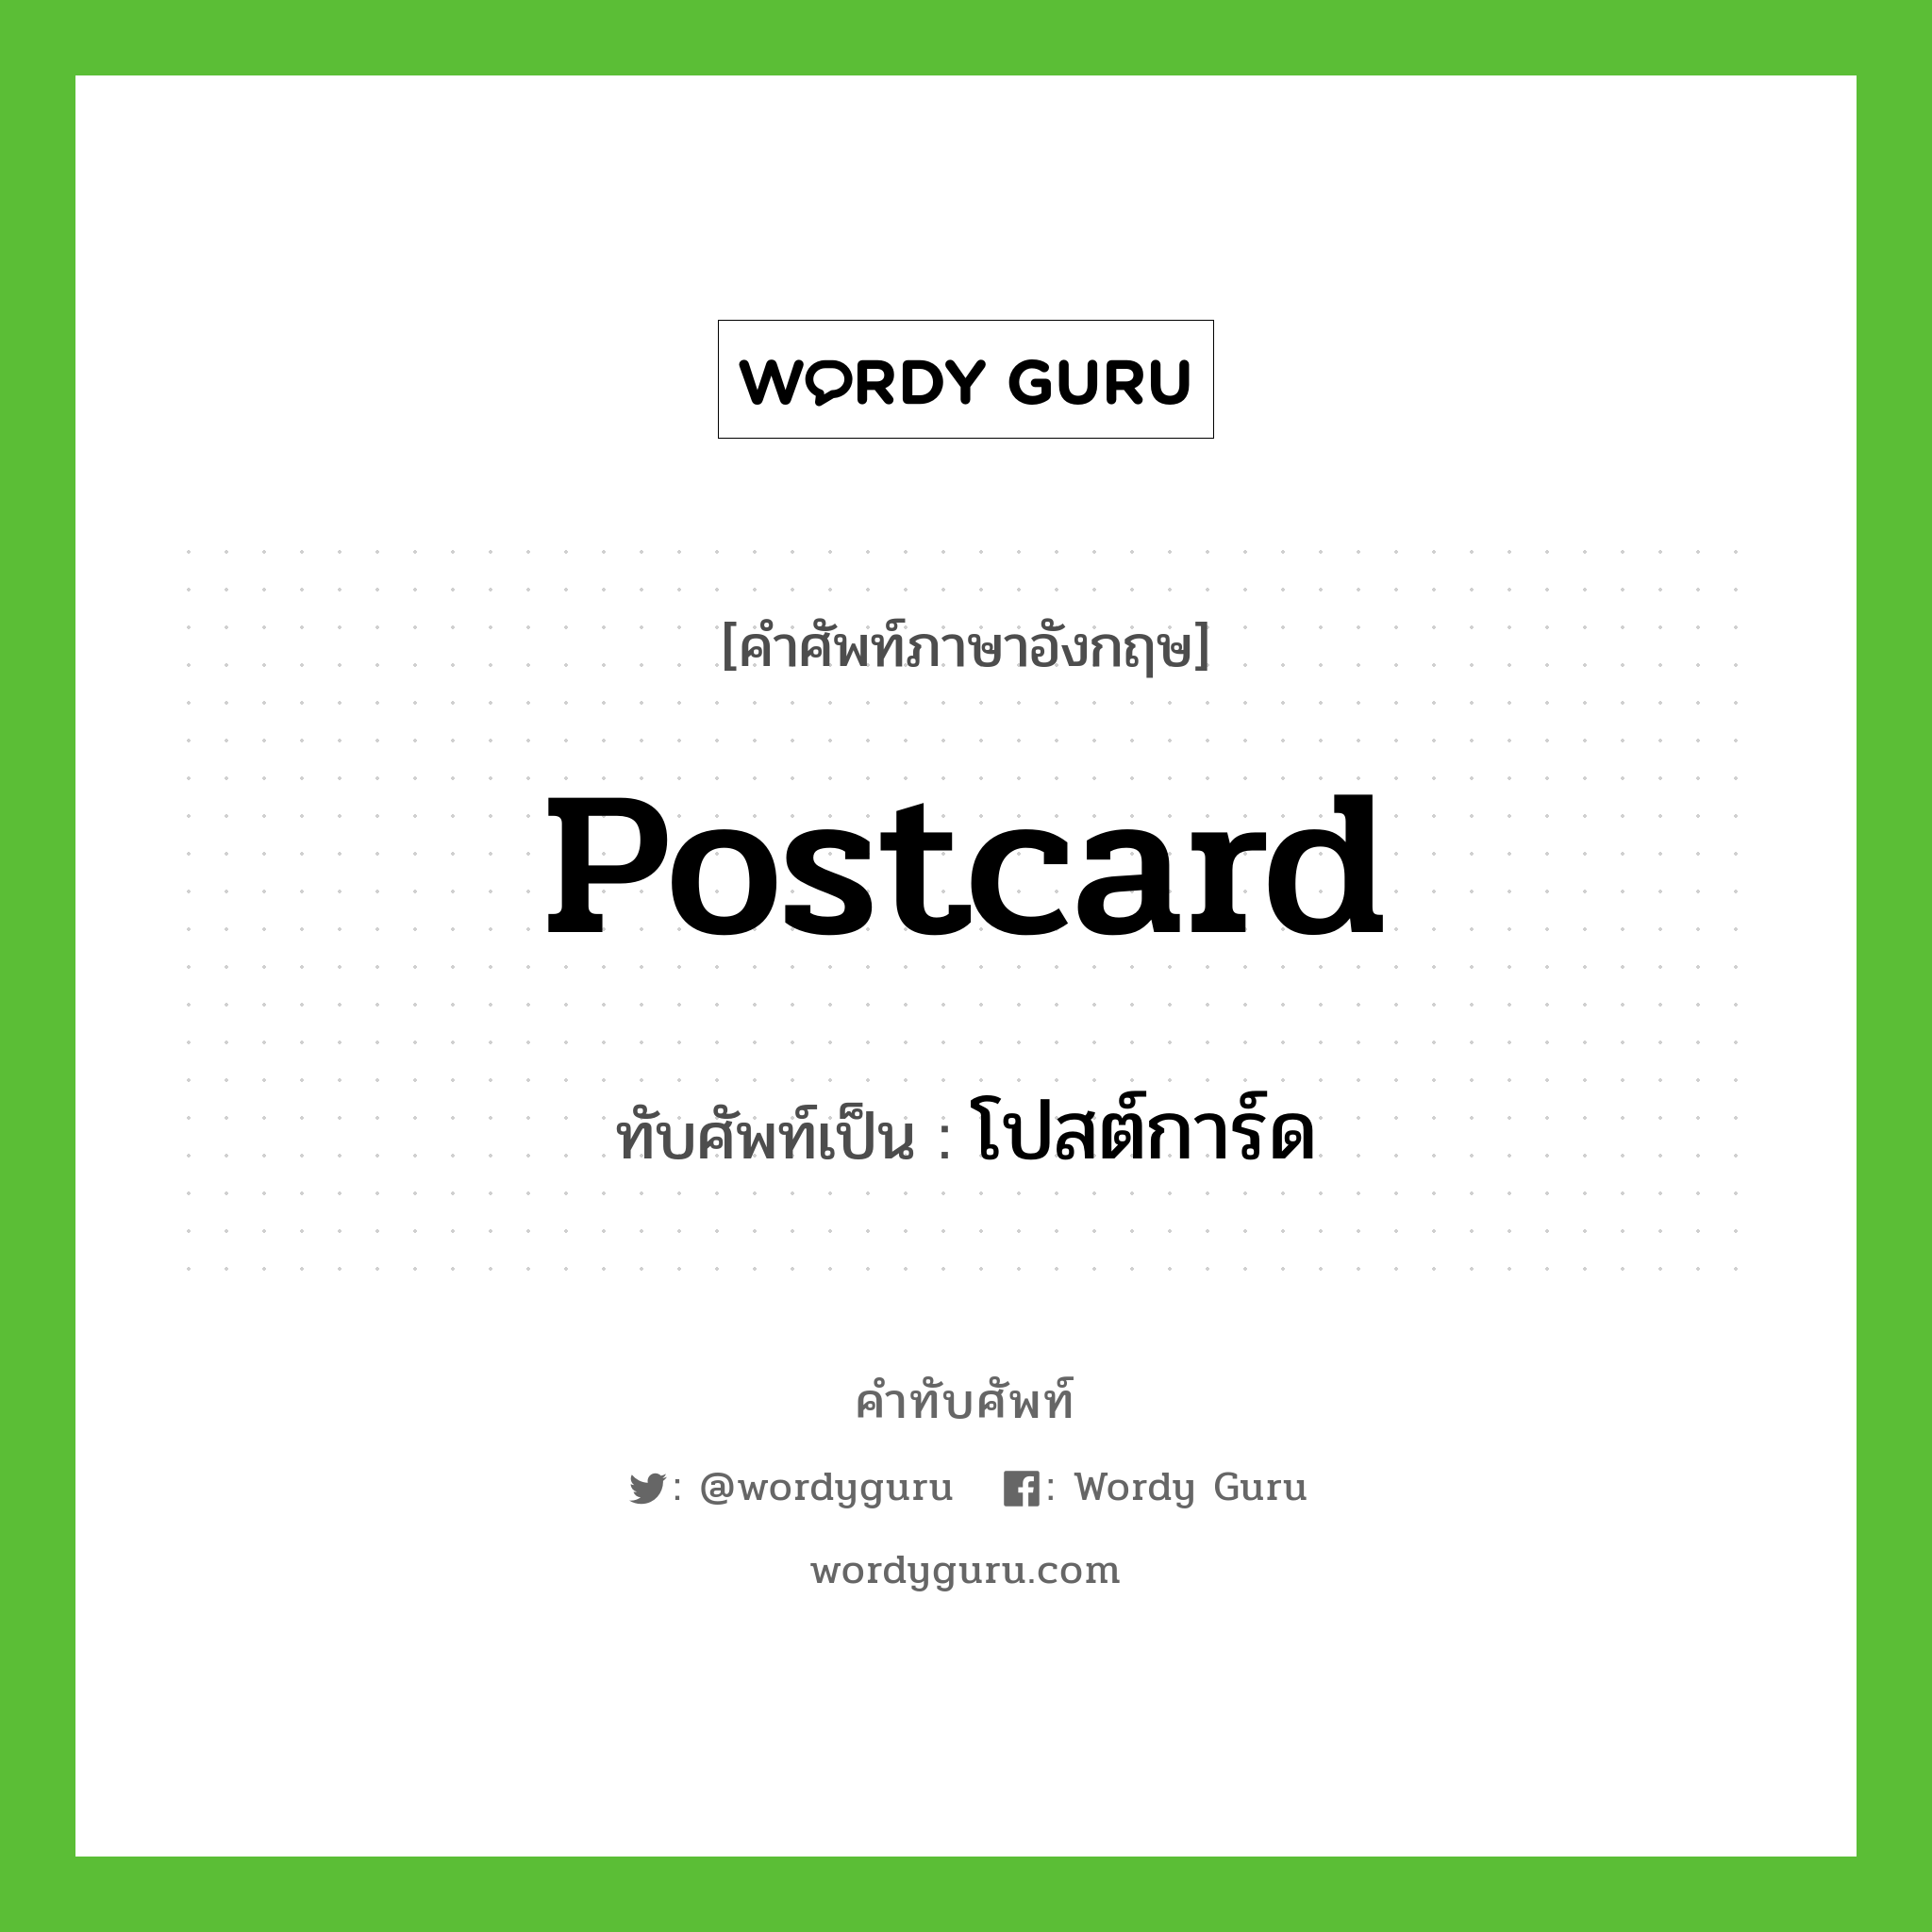 postcard เขียนเป็นคำไทยว่าอะไร?, คำศัพท์ภาษาอังกฤษ postcard ทับศัพท์เป็น โปสต์การ์ด